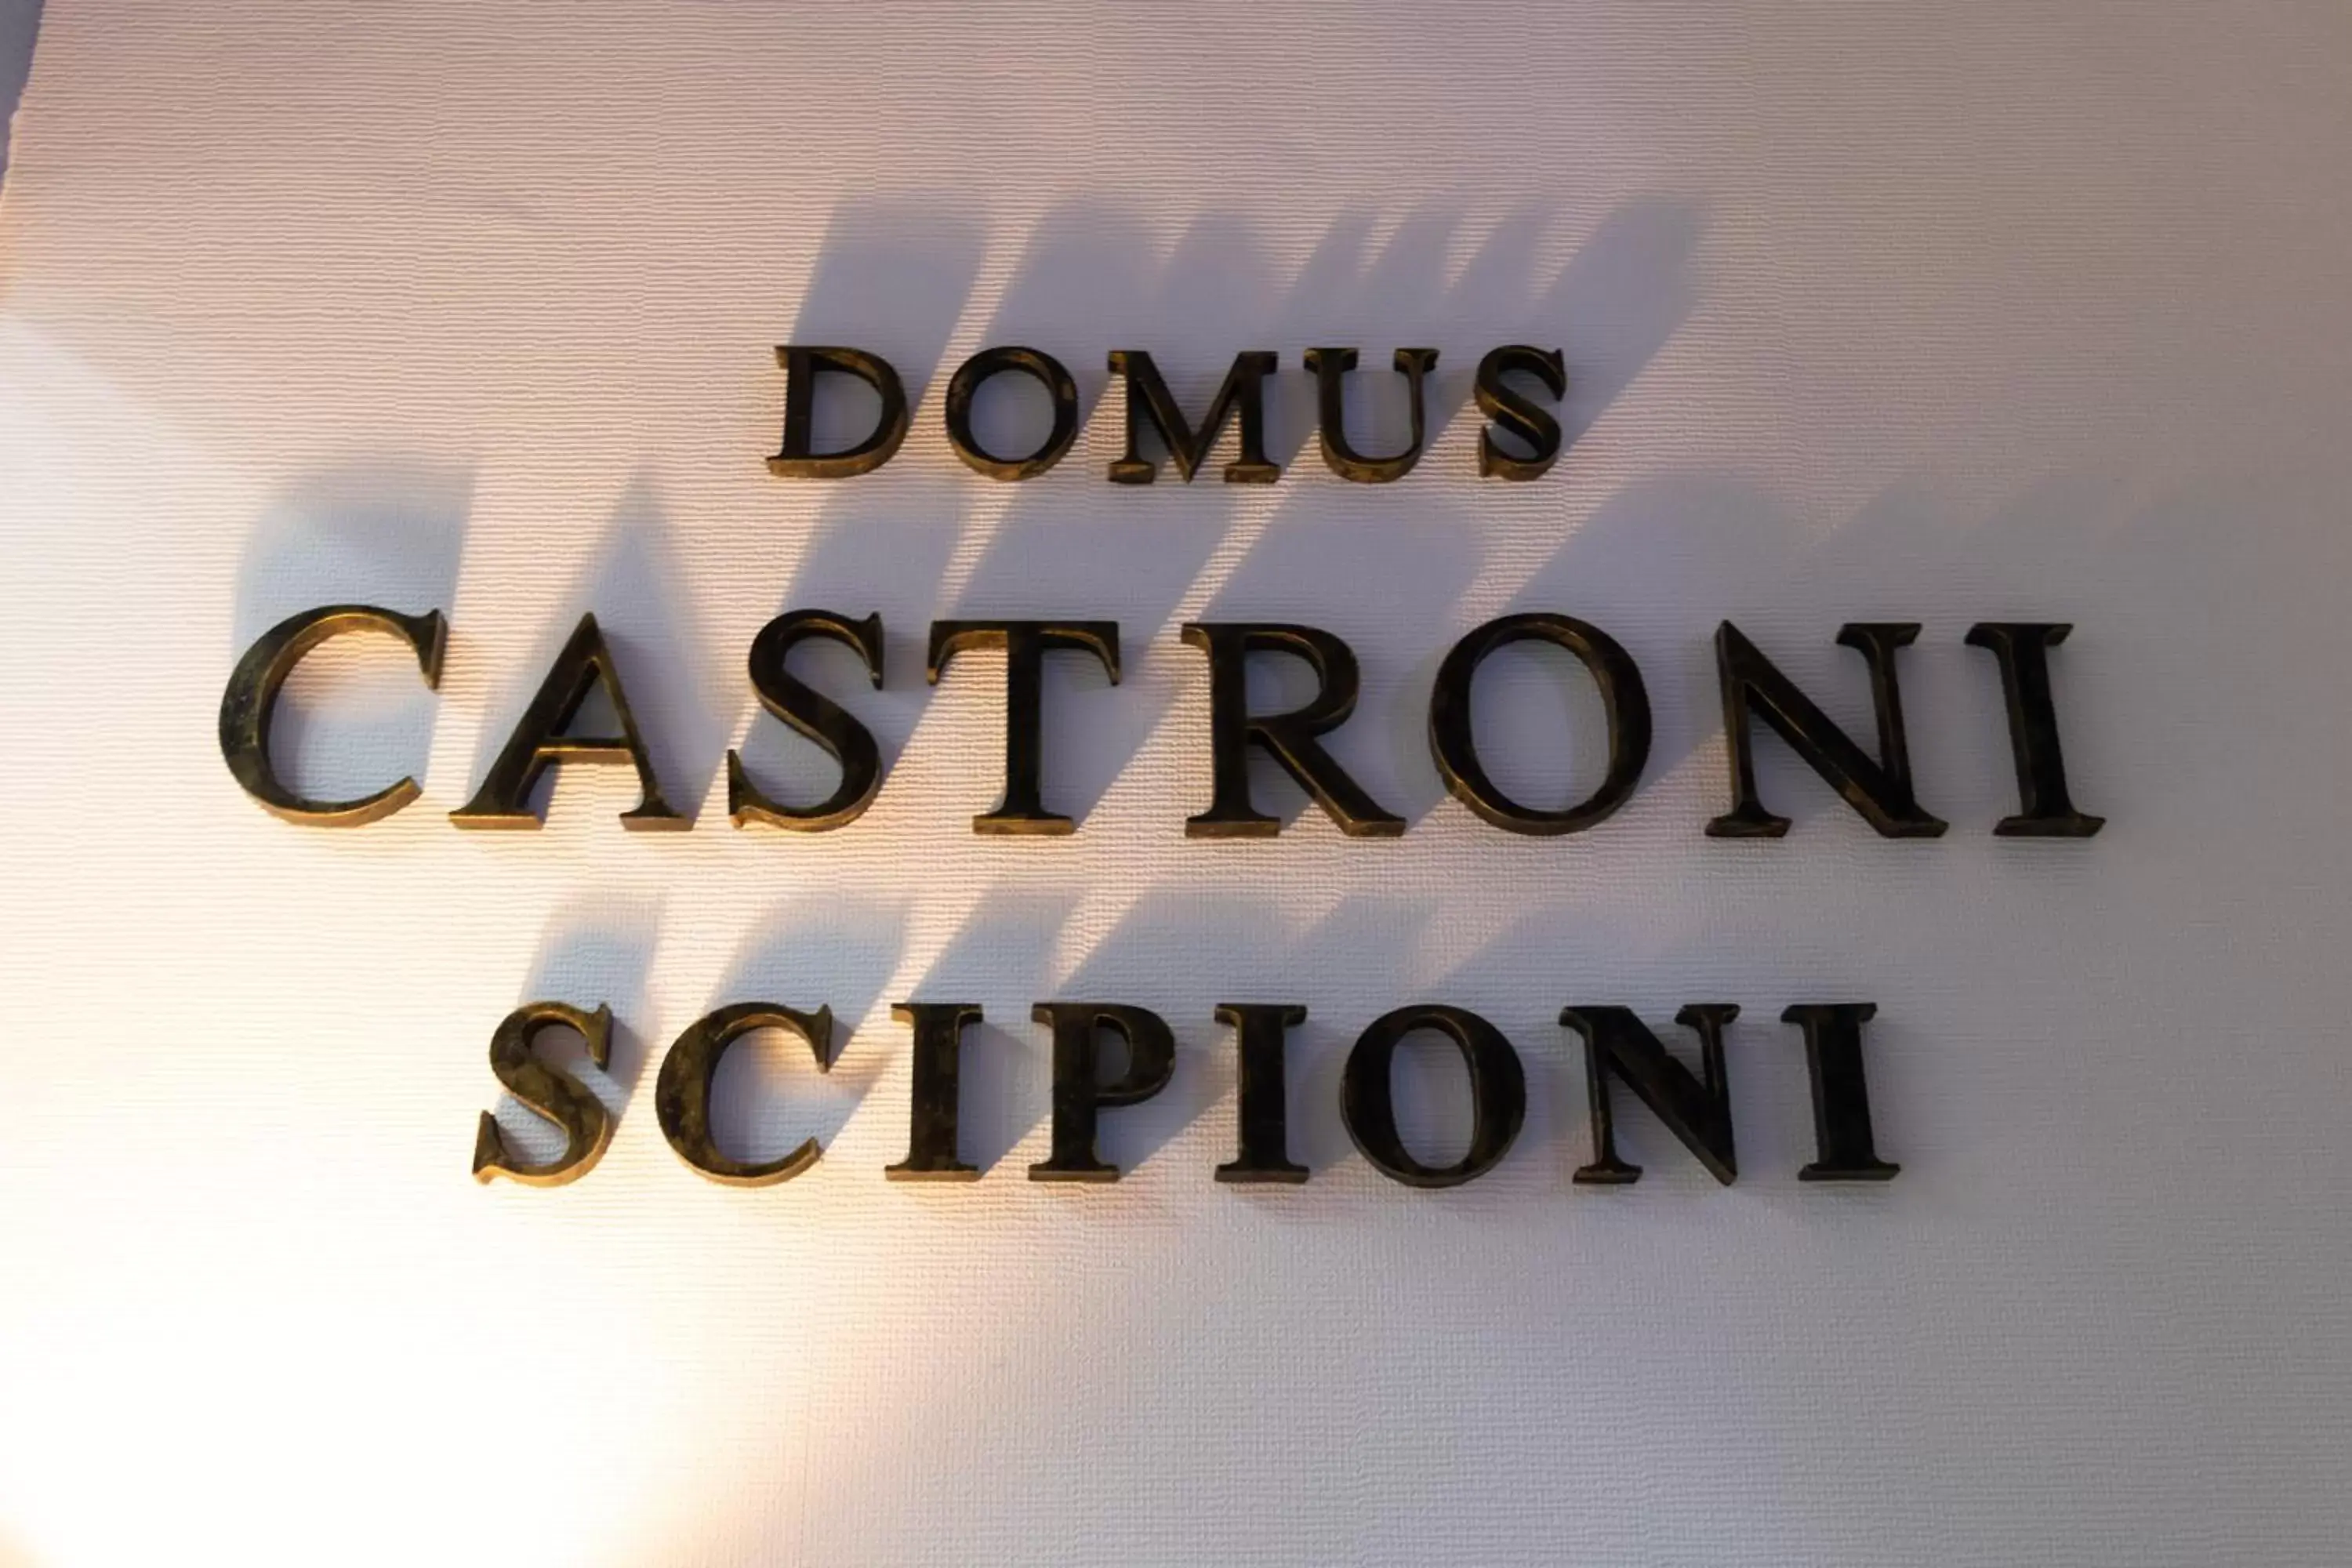 Logo/Certificate/Sign in Domus Castroni Scipioni